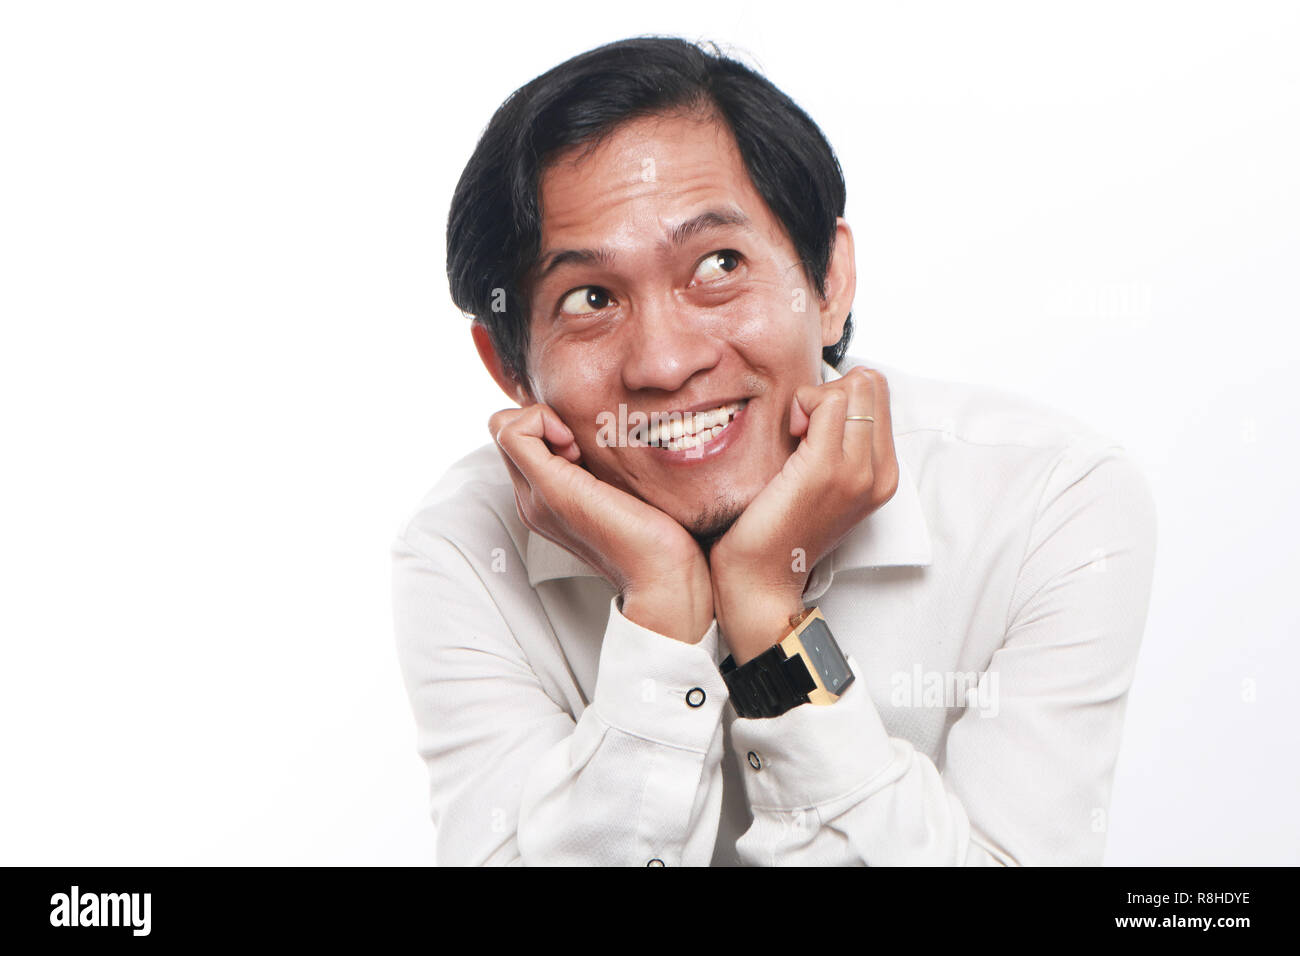 Foto immagine ritratto di un divertente giovane imprenditore asiatico sembrava felice e sorridente mentre pensando a qualcosa, close up ritratto su bianco Foto Stock